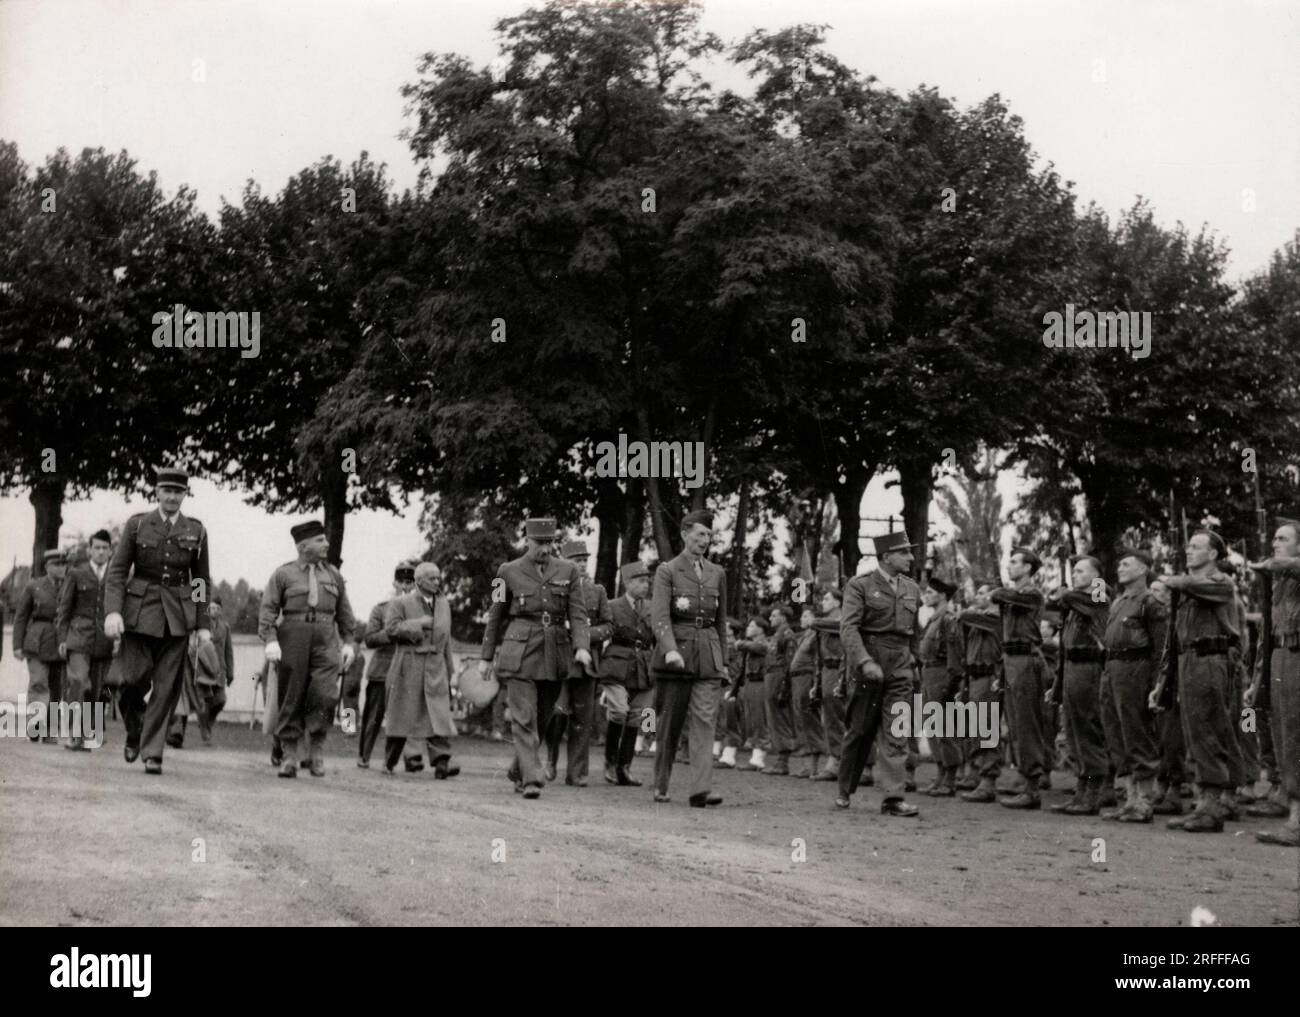 Coupe d'athlétisme de l'armée française sous la présidence du General Jean de Lattre de Tassigny (1889-1952) a Strasbourg (France) - Photographie, 23091945 Banque D'Images